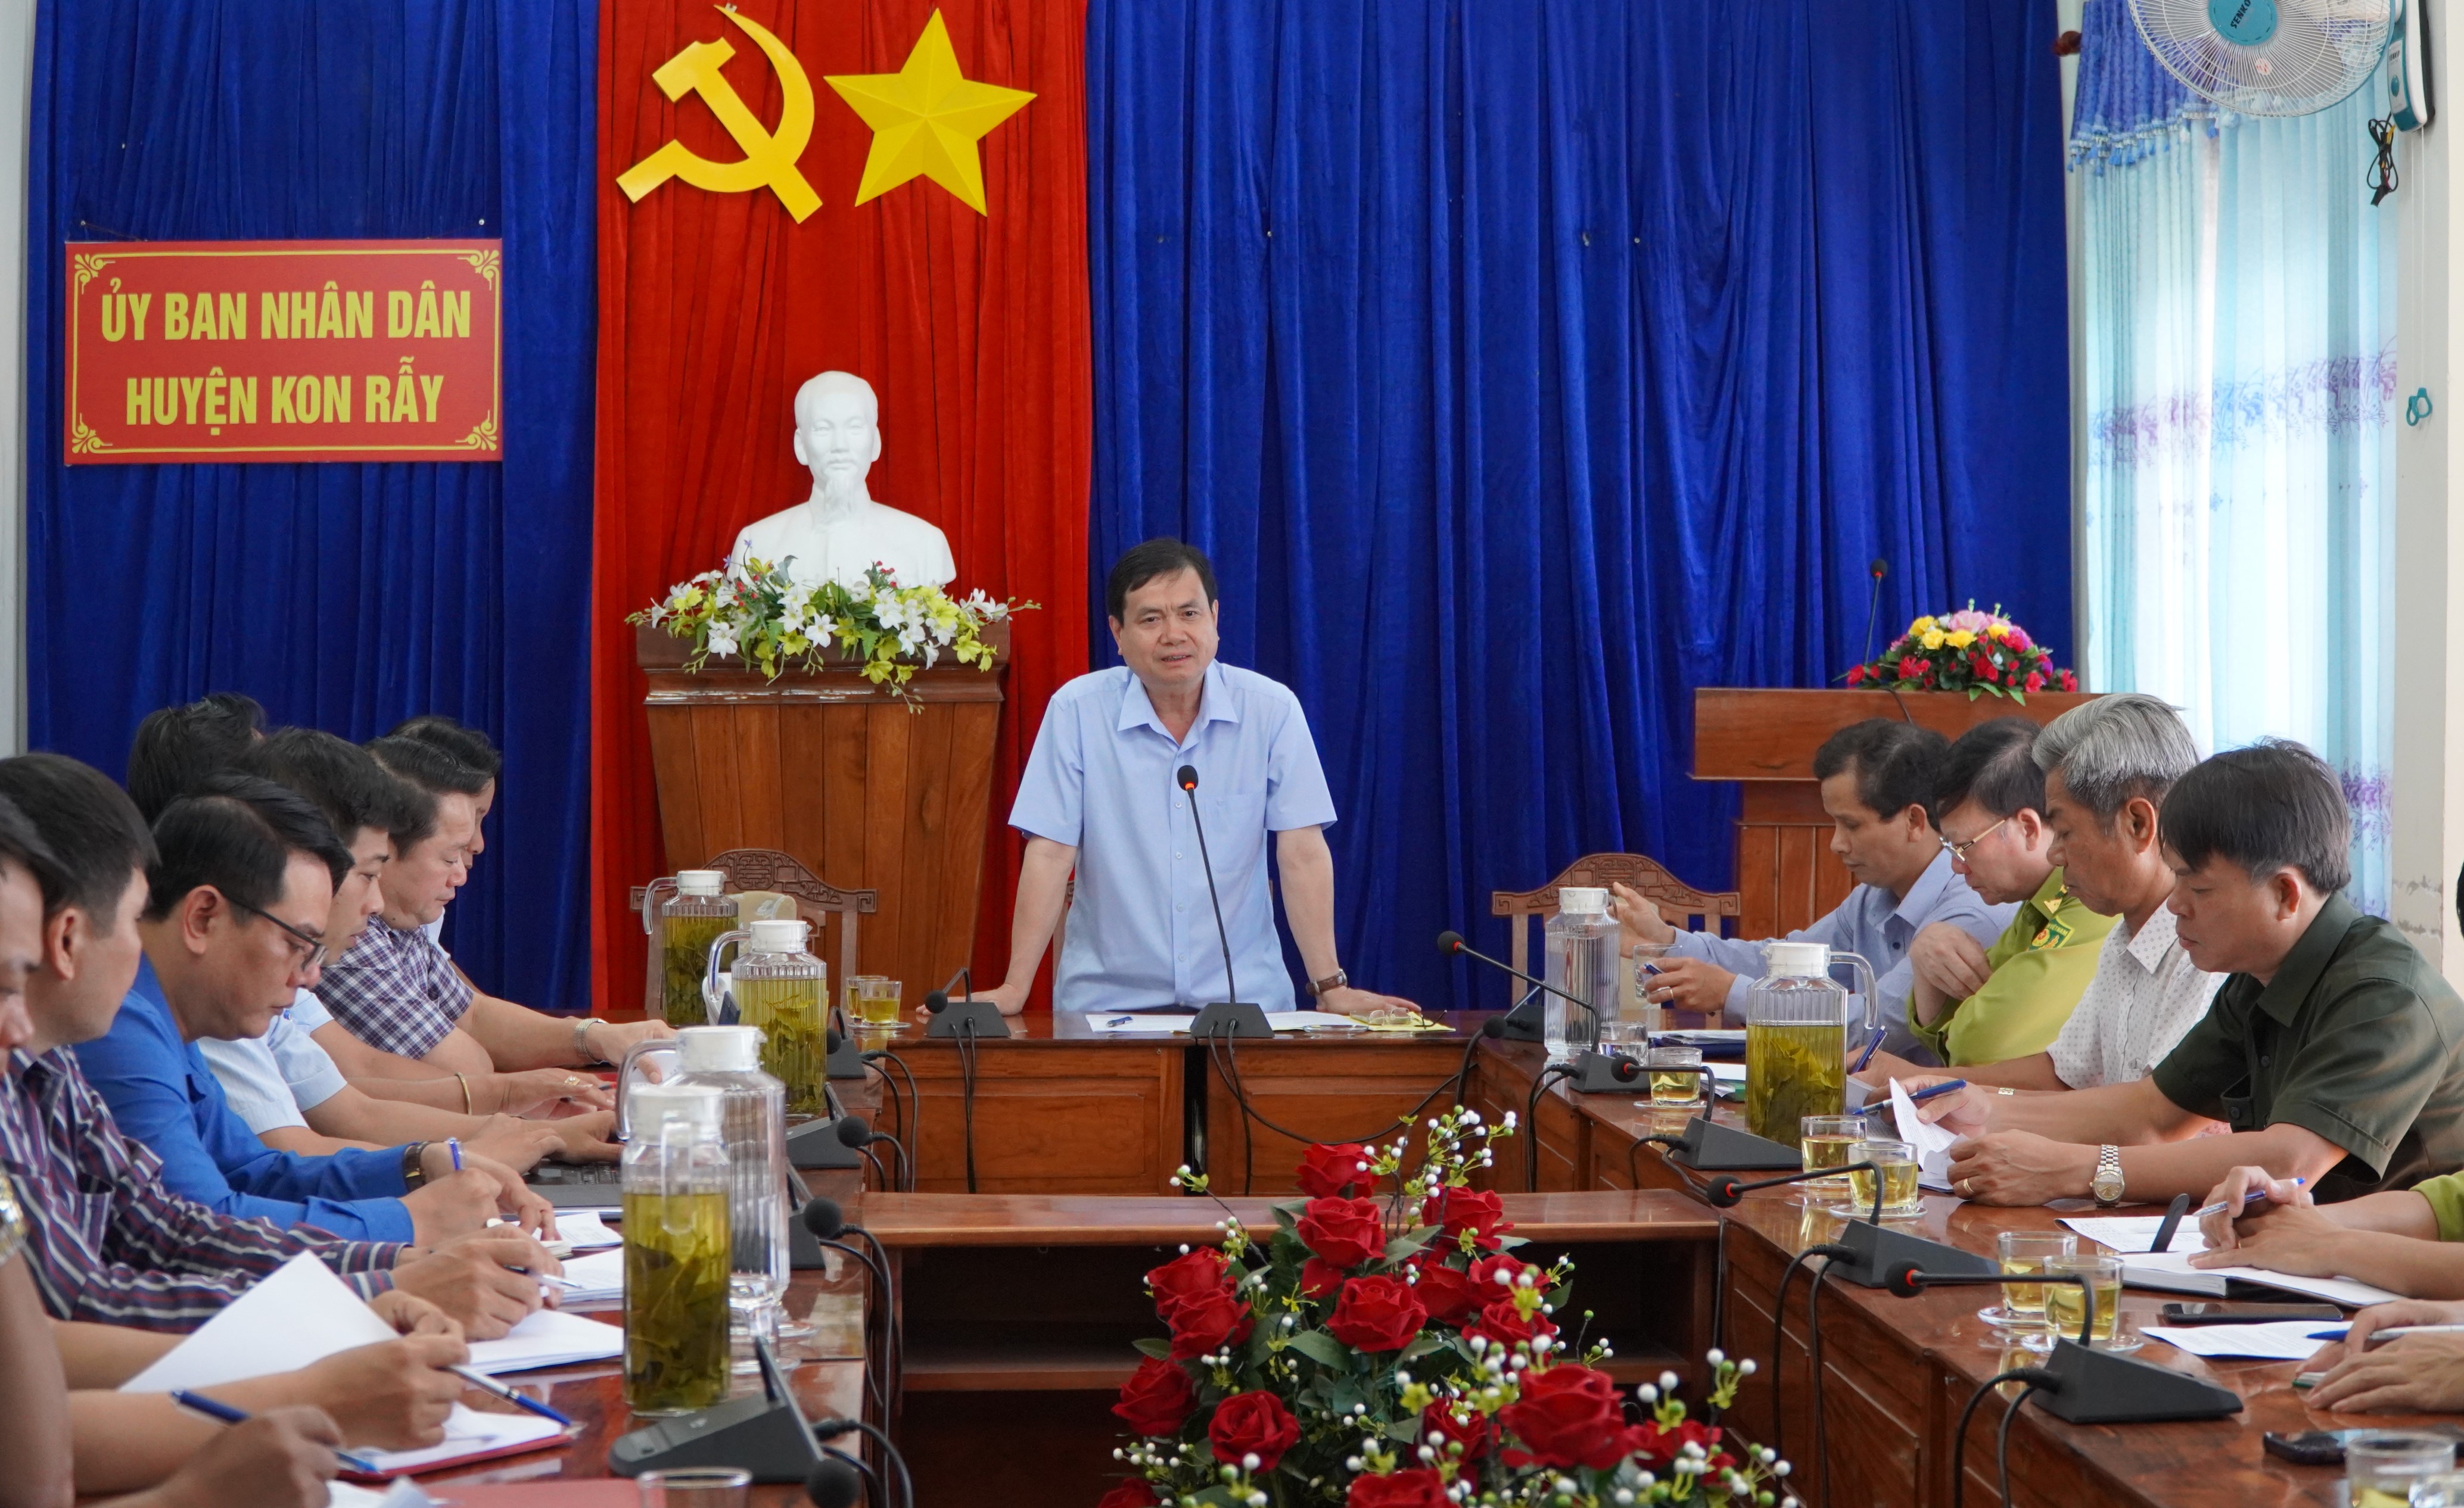 Phó Chủ tịch UBND tỉnh Nguyễn Hữu Tháp làm việc tại huyện Kon Rẫy